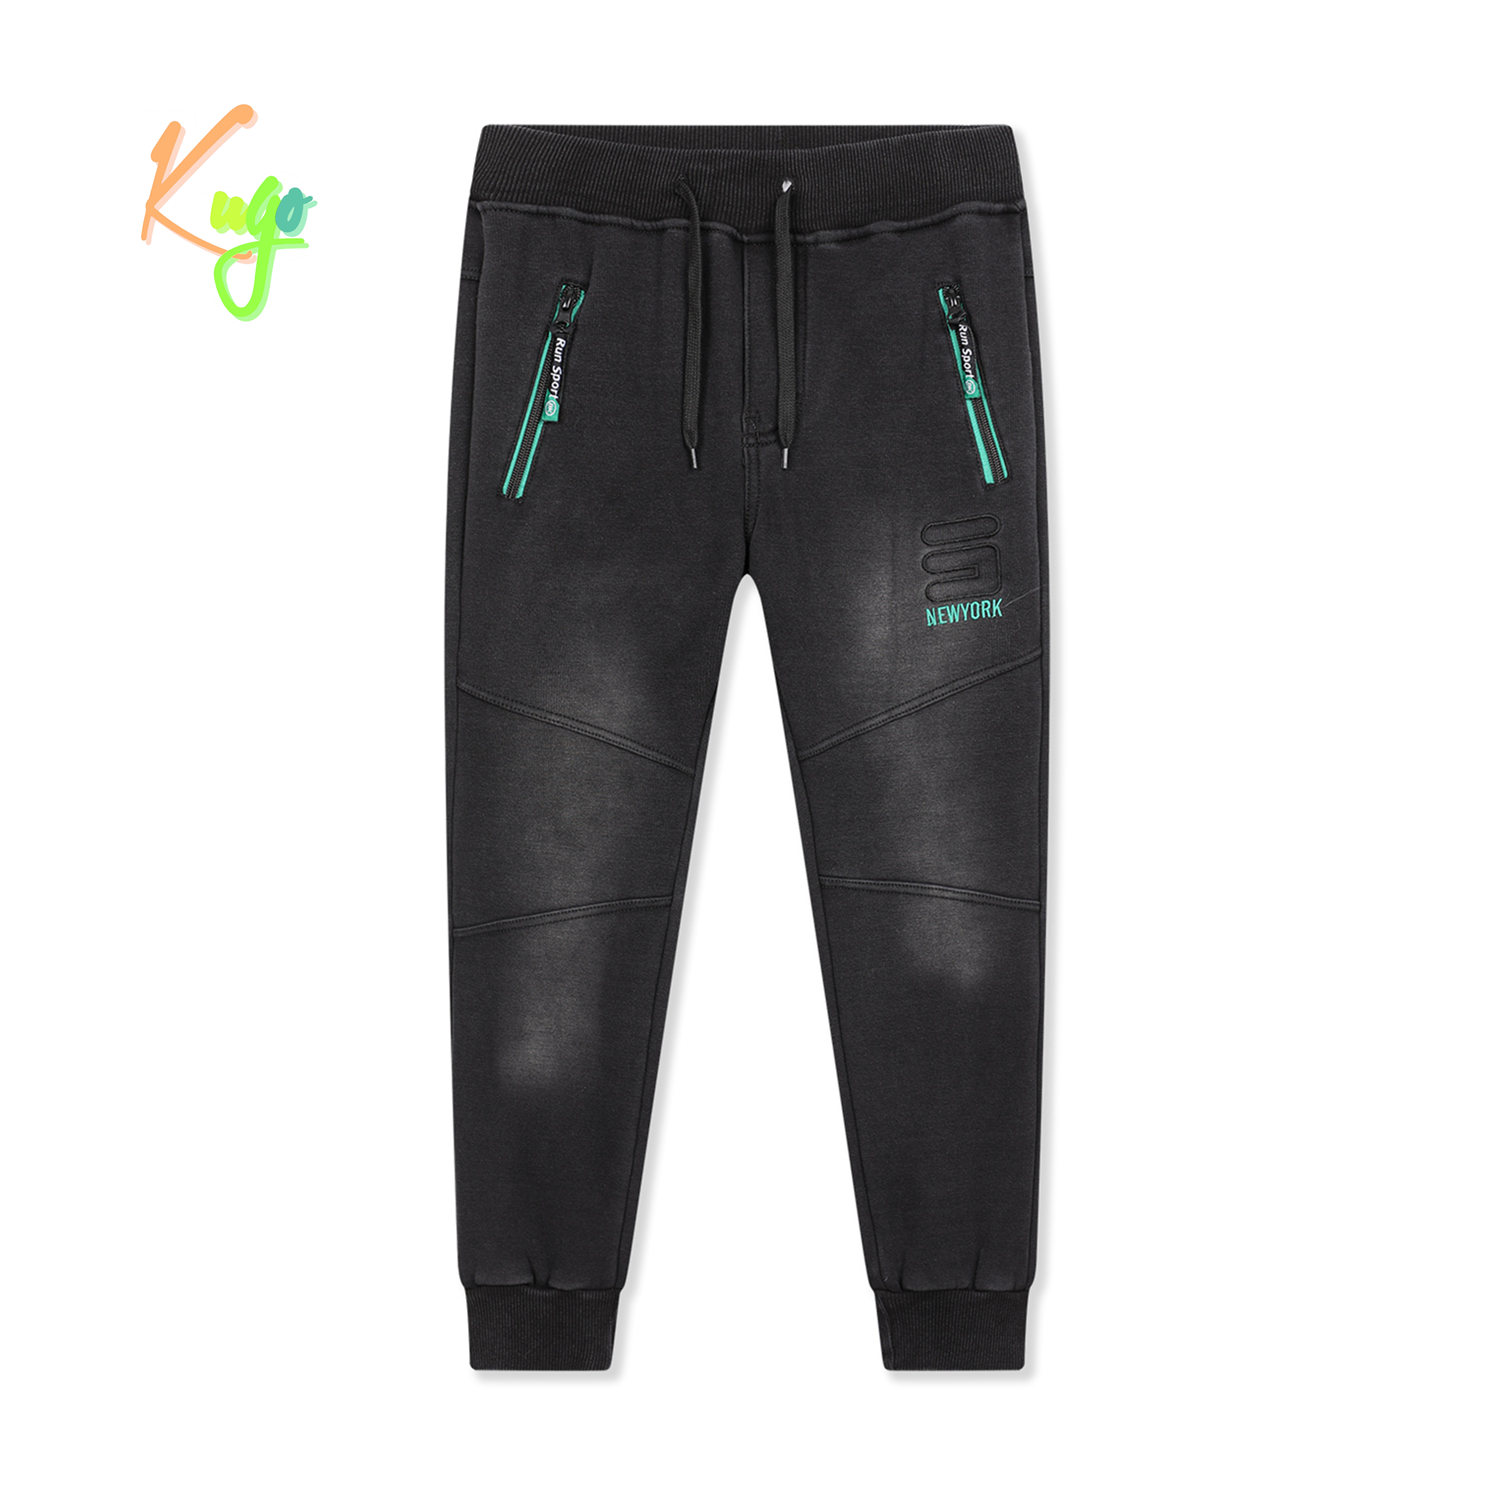 Chlapecké riflové kalhoty/ tepláky, zateplené - KUGO FK0318, černá Barva: Černá, Velikost: 164